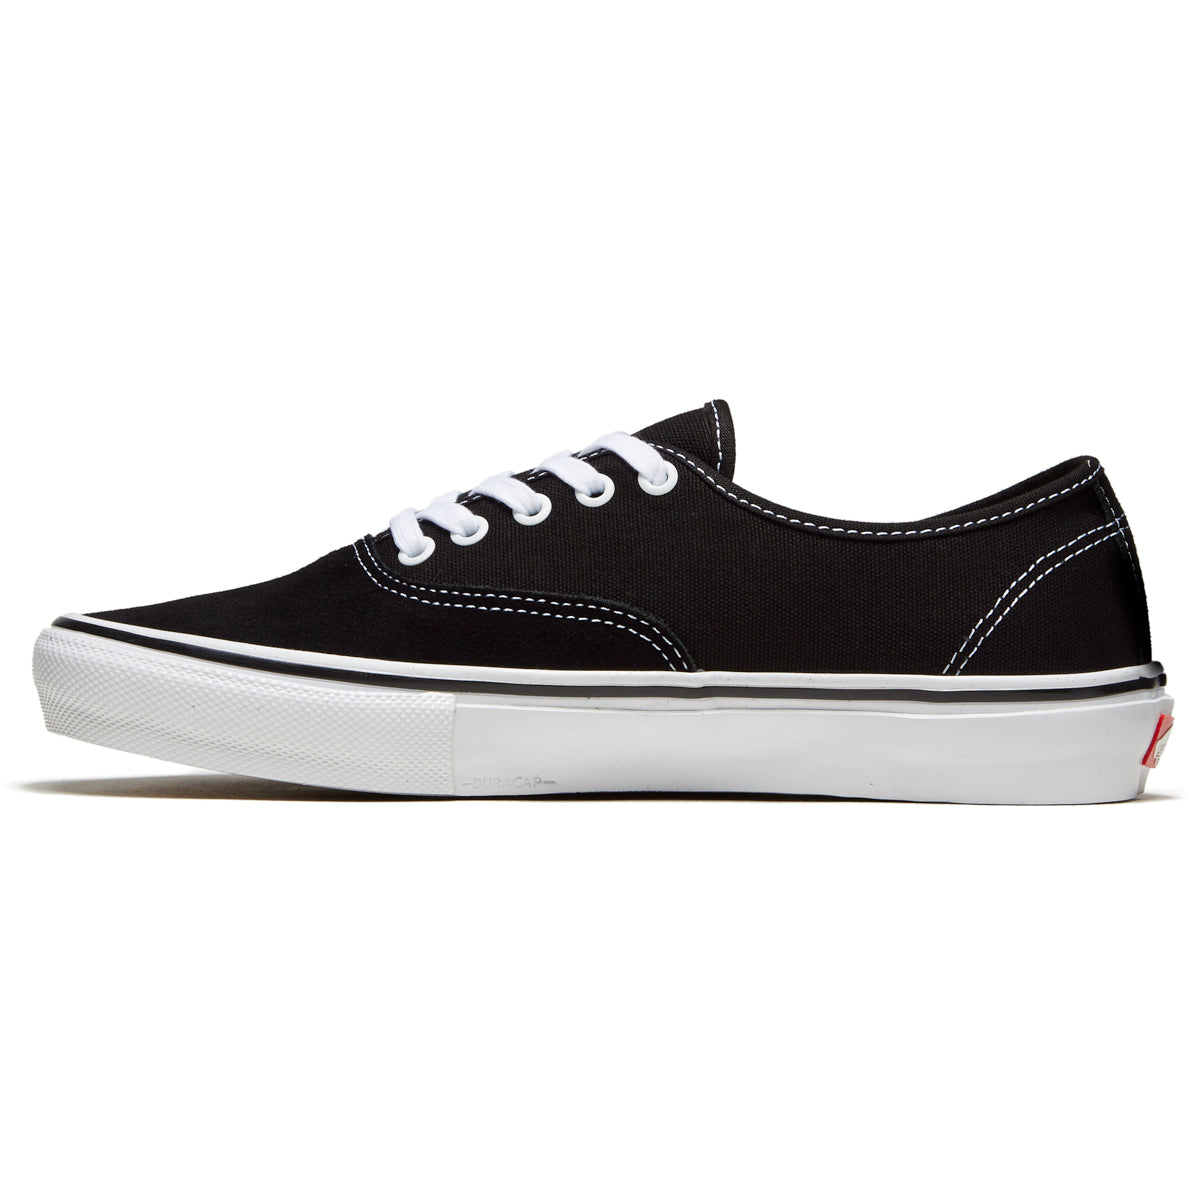 Vans Skate Authentic Shoes - Black/White image 2